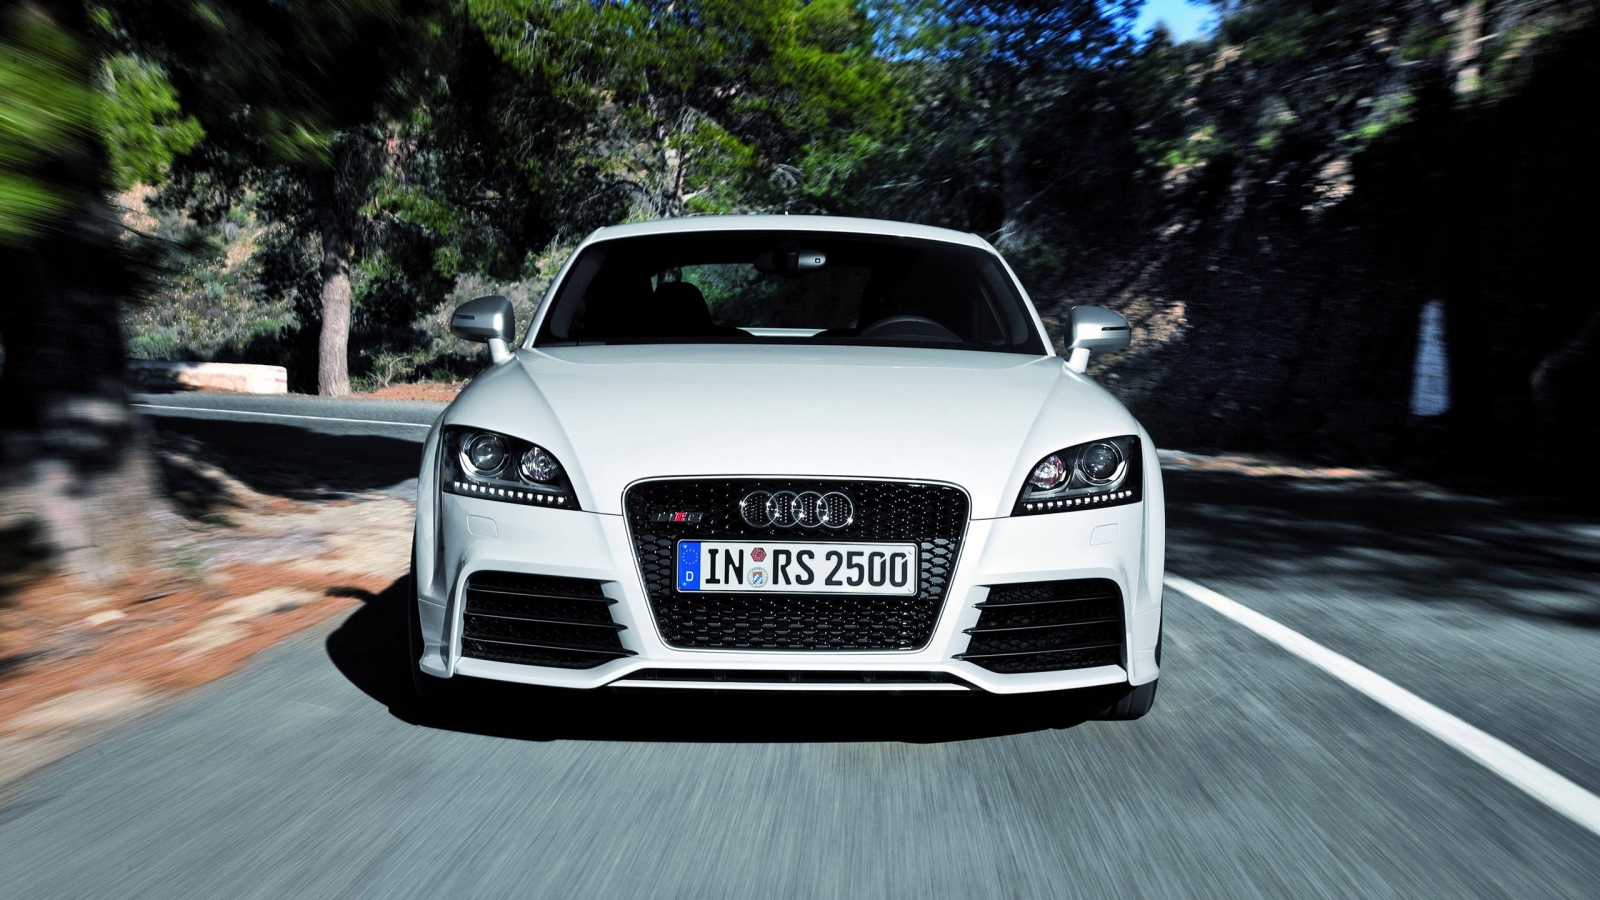 Audi TT RS 2012 Speed for 1600 x 900 HDTV resolution